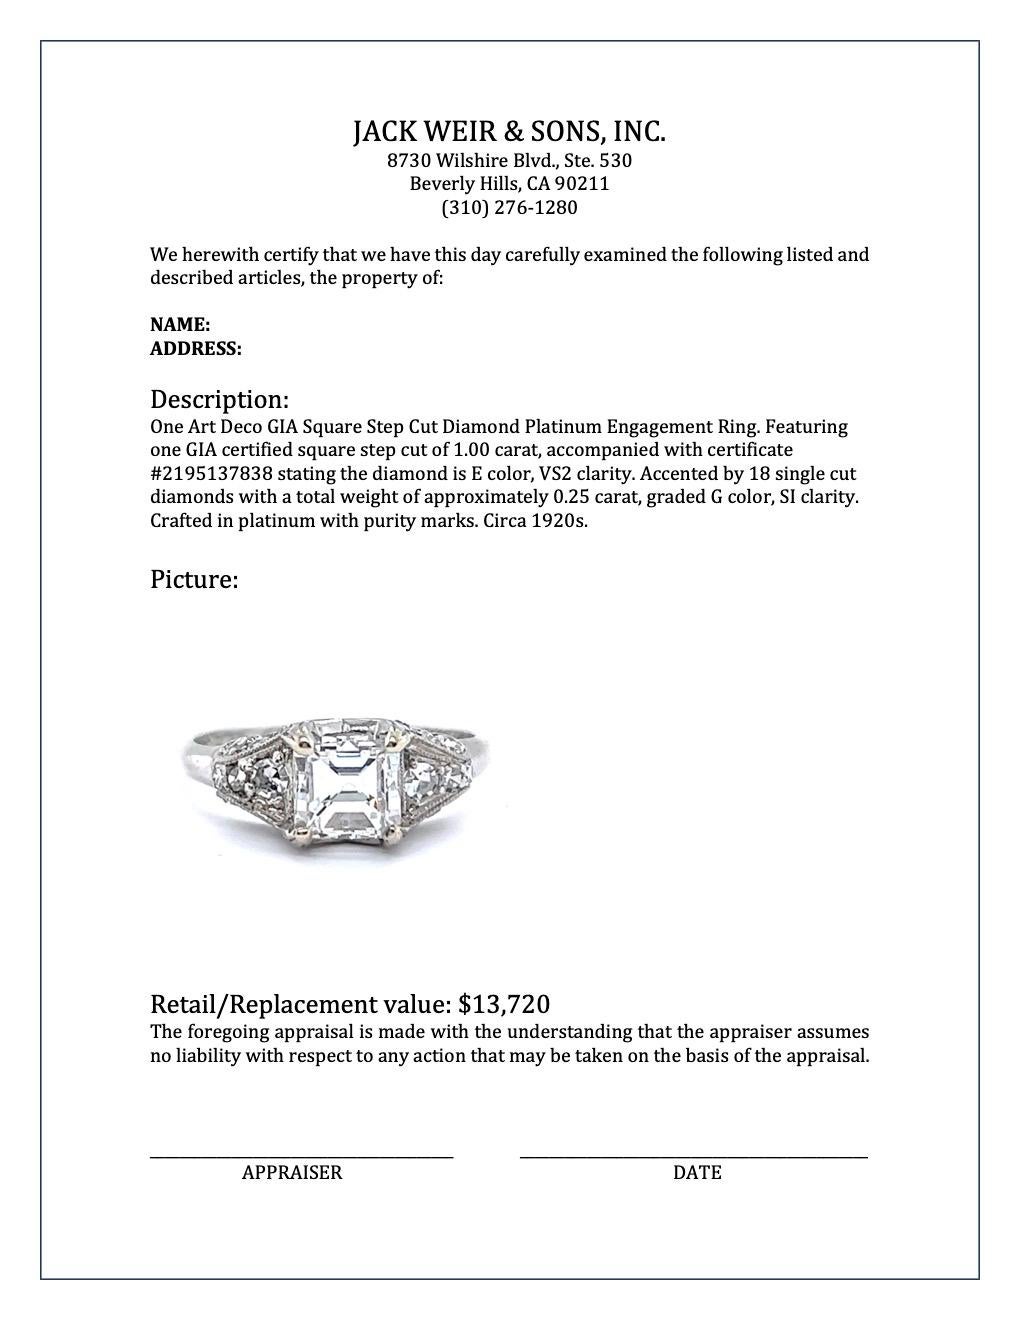 Art Deco GIA 1.00 Carat Square Step Cut Diamond Platinum Engagement Ring 1